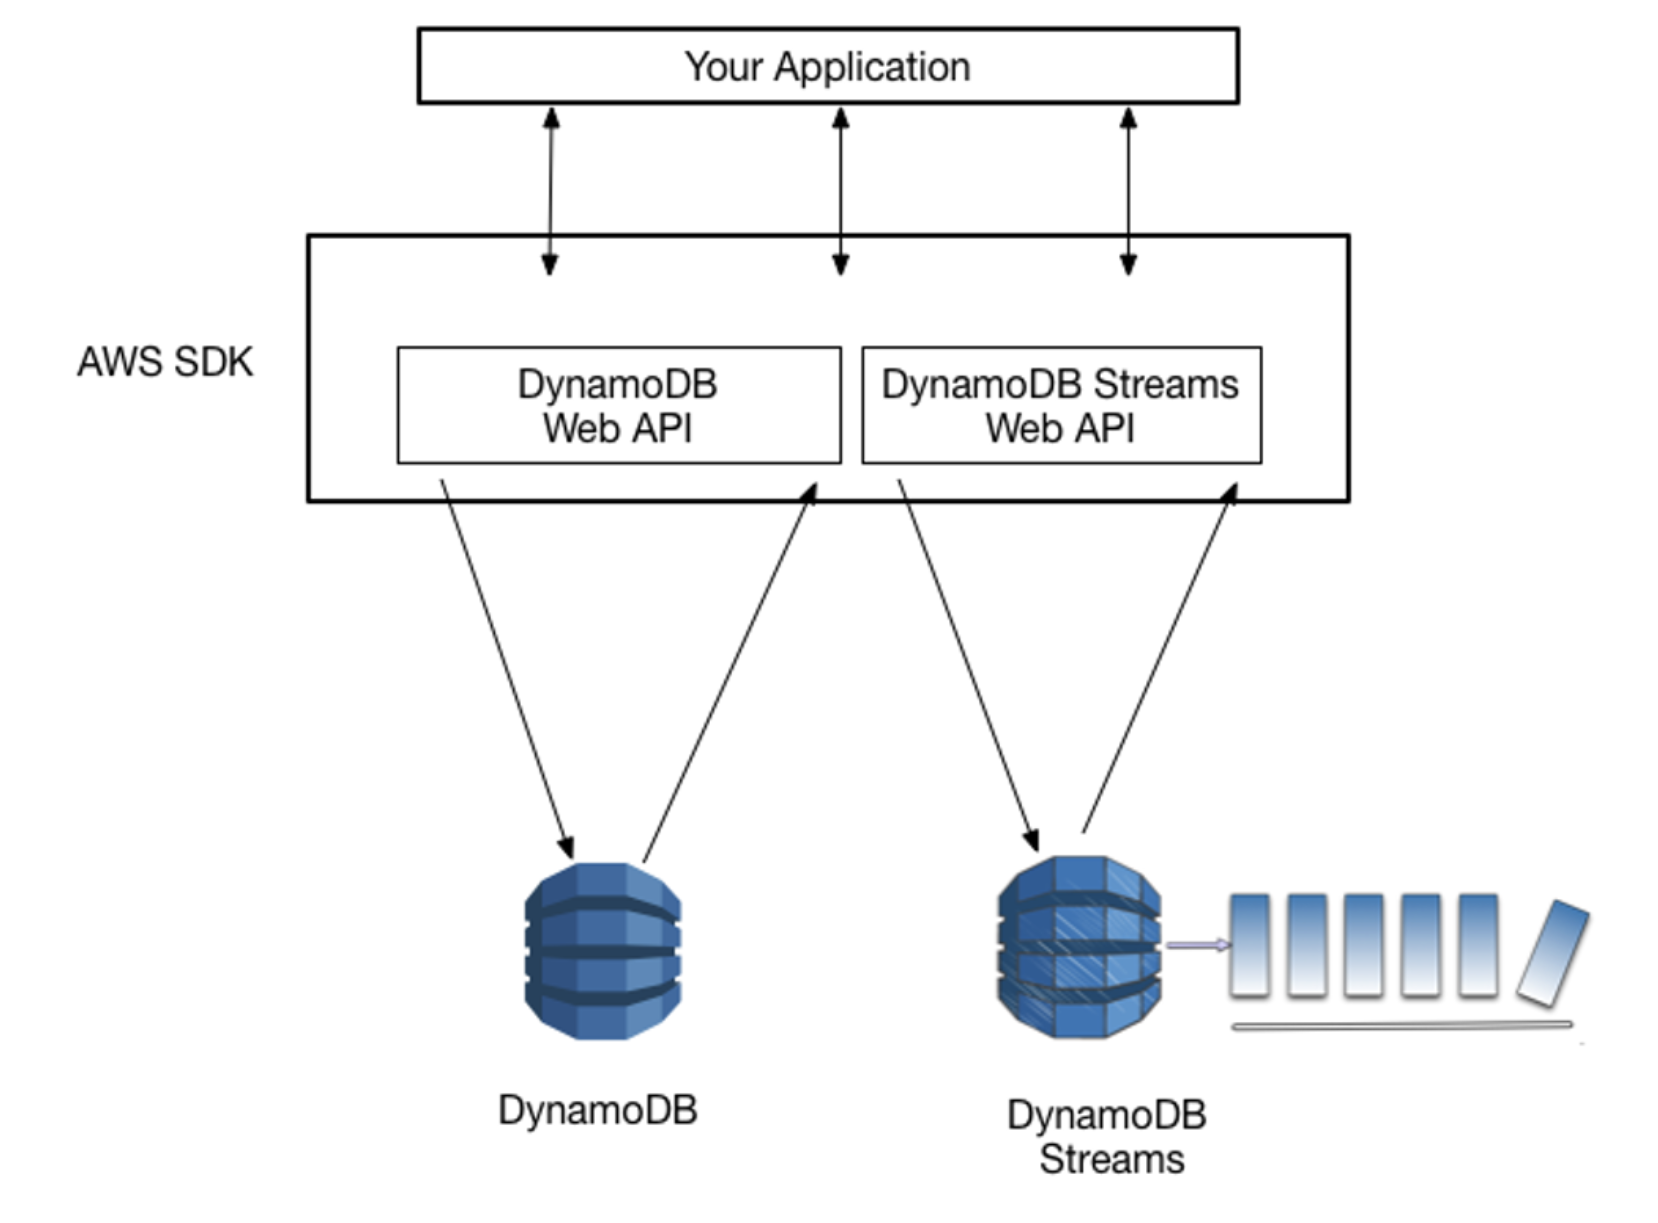 Accessing DynamoDB and DynamoDB Streams